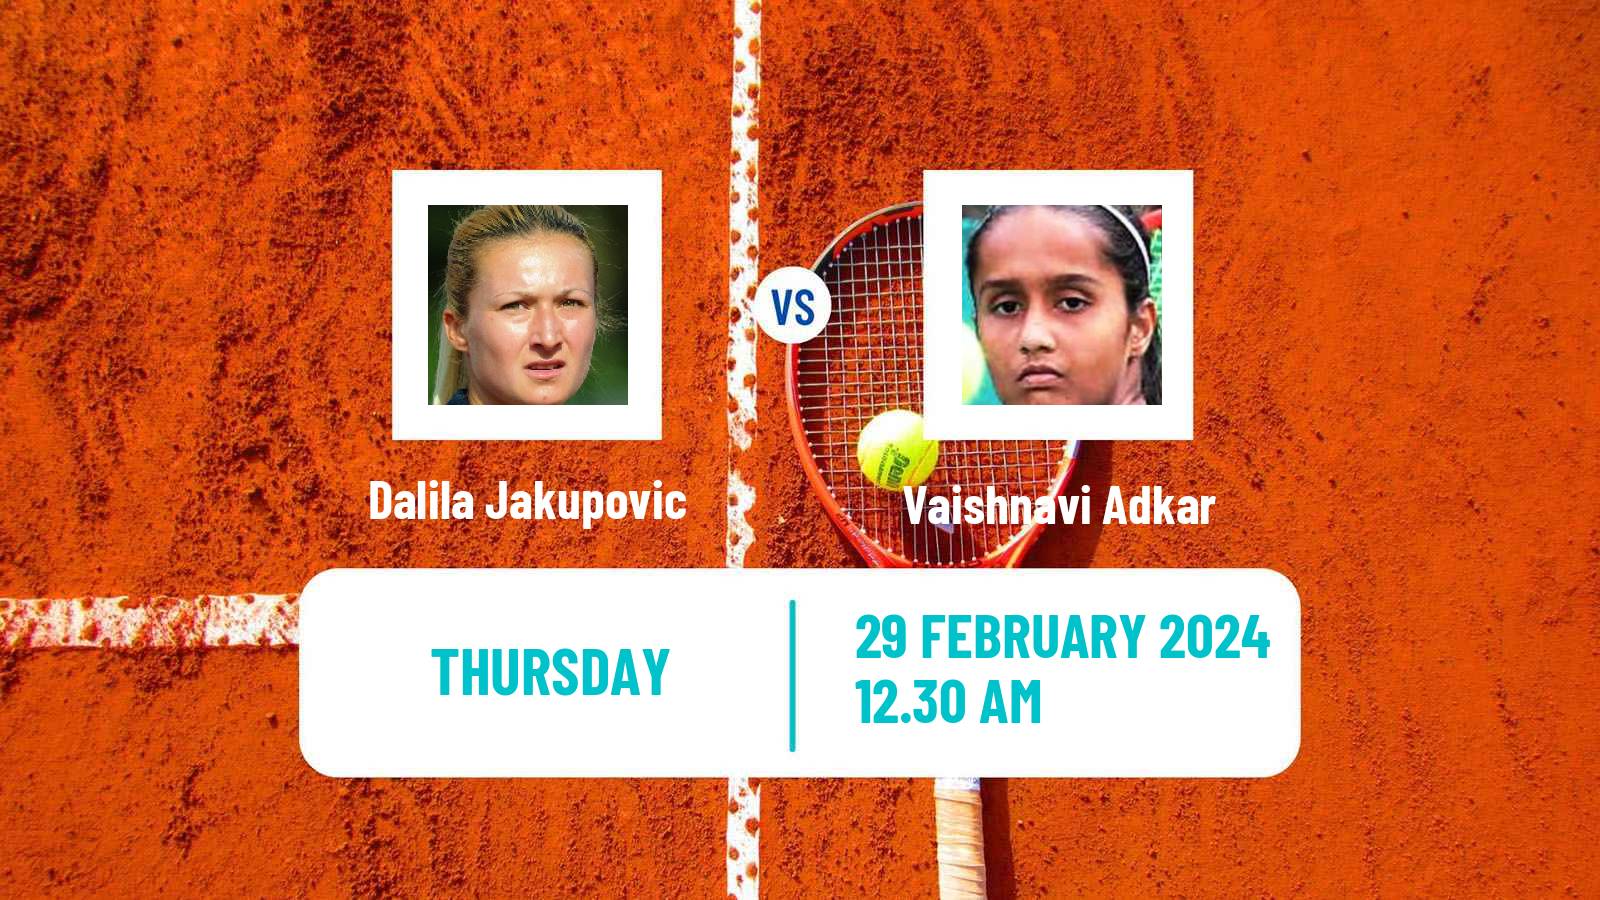 Tennis ITF W35 Gurugram Women Dalila Jakupovic - Vaishnavi Adkar